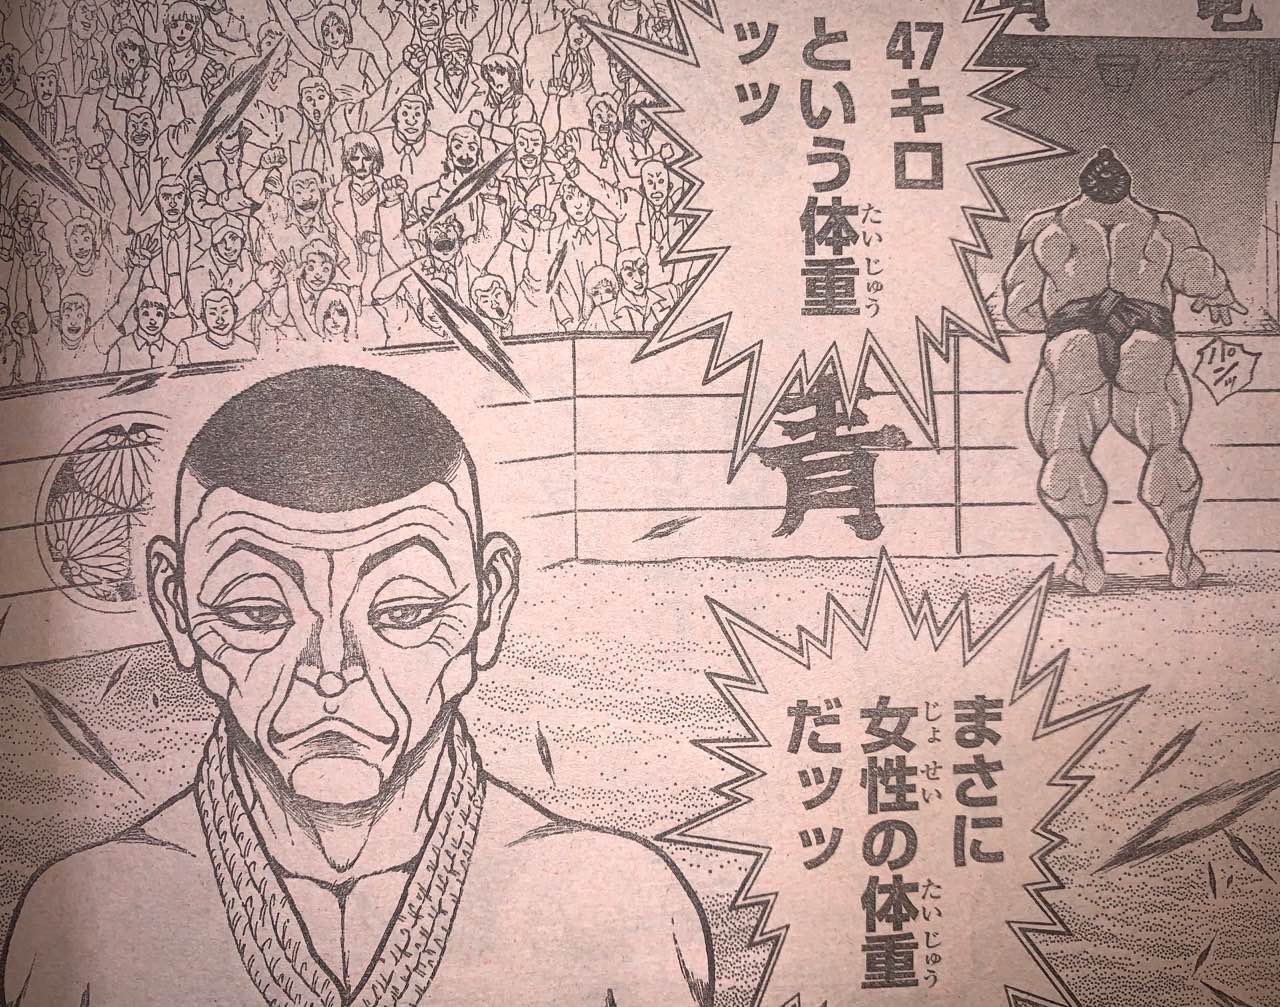 ネタバレ注意 バキ道最新話 ついに相撲vs合気道が激突ｯｯ あにまんch